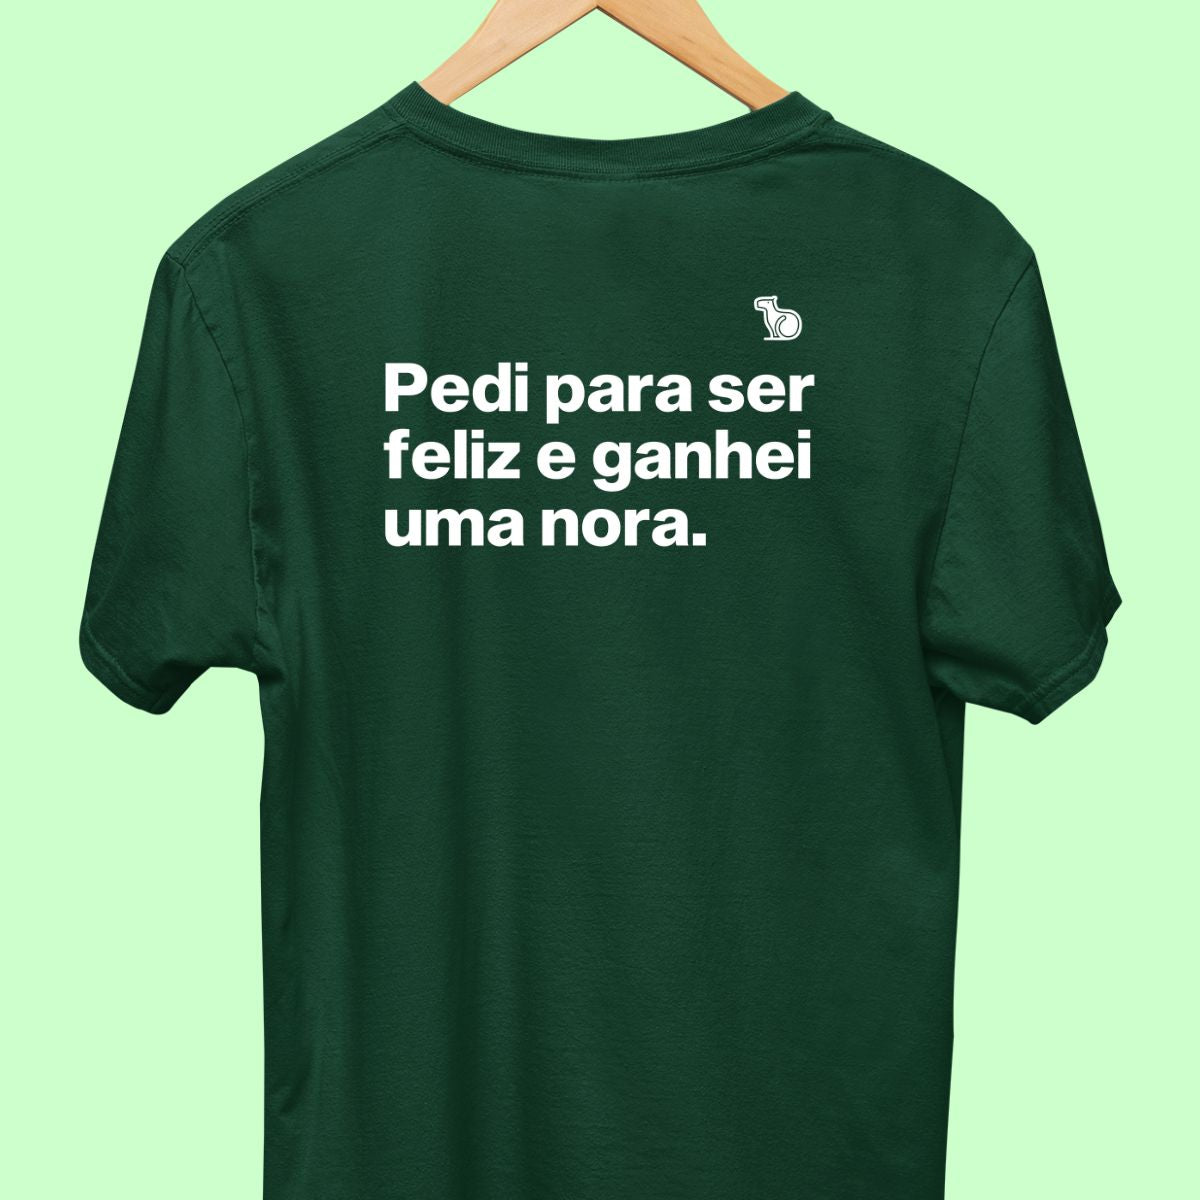 Camiseta com a frase "Pedi para ser feliz e ganhei uma nora." masculina verde.